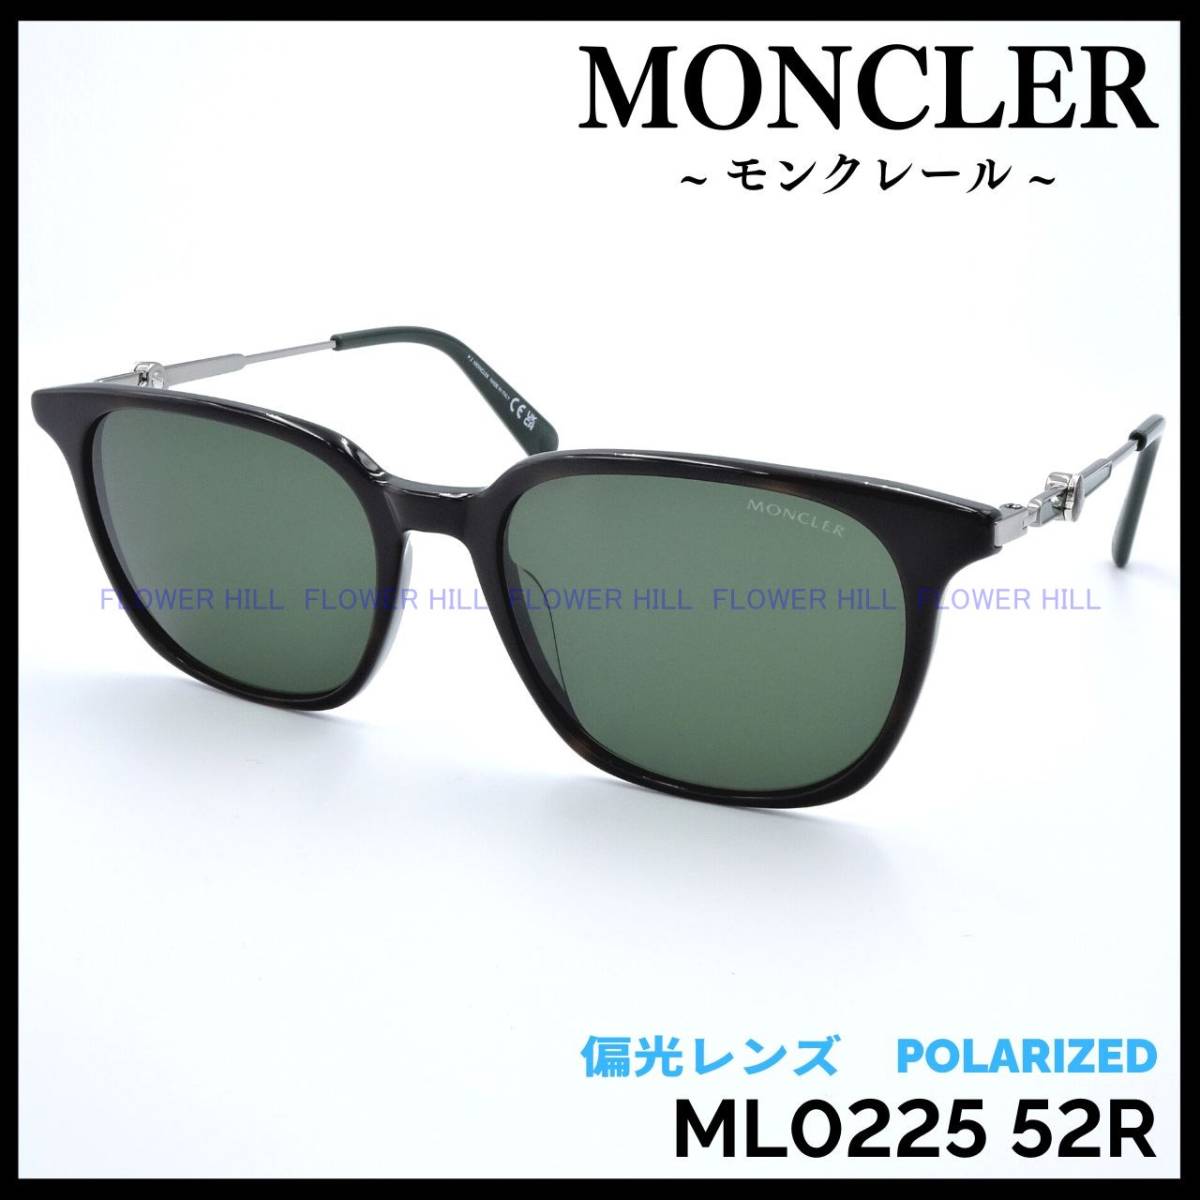 【新品・送料無料】モンクレール MONCLER ML0225 52R 偏光サングラス ダークハバナ イタリア製 メンズ レディース